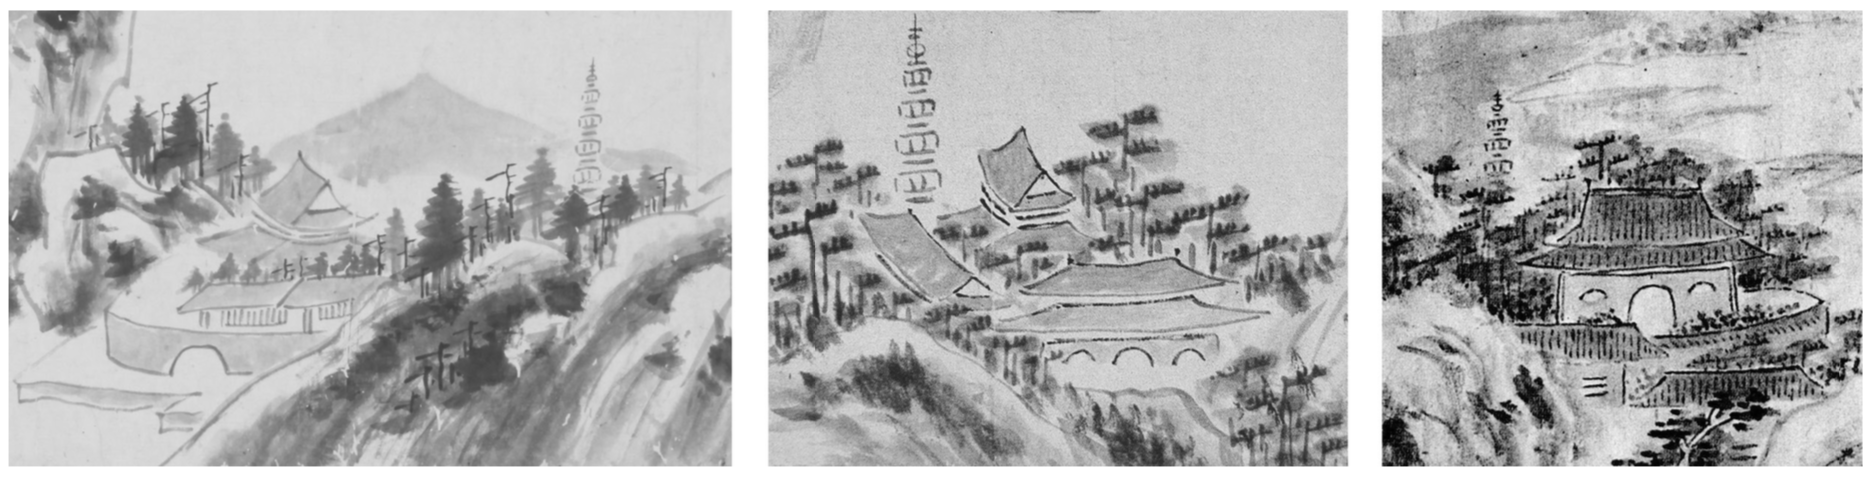 图十三 寺庙、塔 局部(从左往右)分别为《一筇万里图卷》(云南省博物馆藏)、《山水图卷》(南京博物院藏)、《树 倒叶枯图卷》(云南省博物馆藏) 采自《担当书画全集》第 35、55、58 页